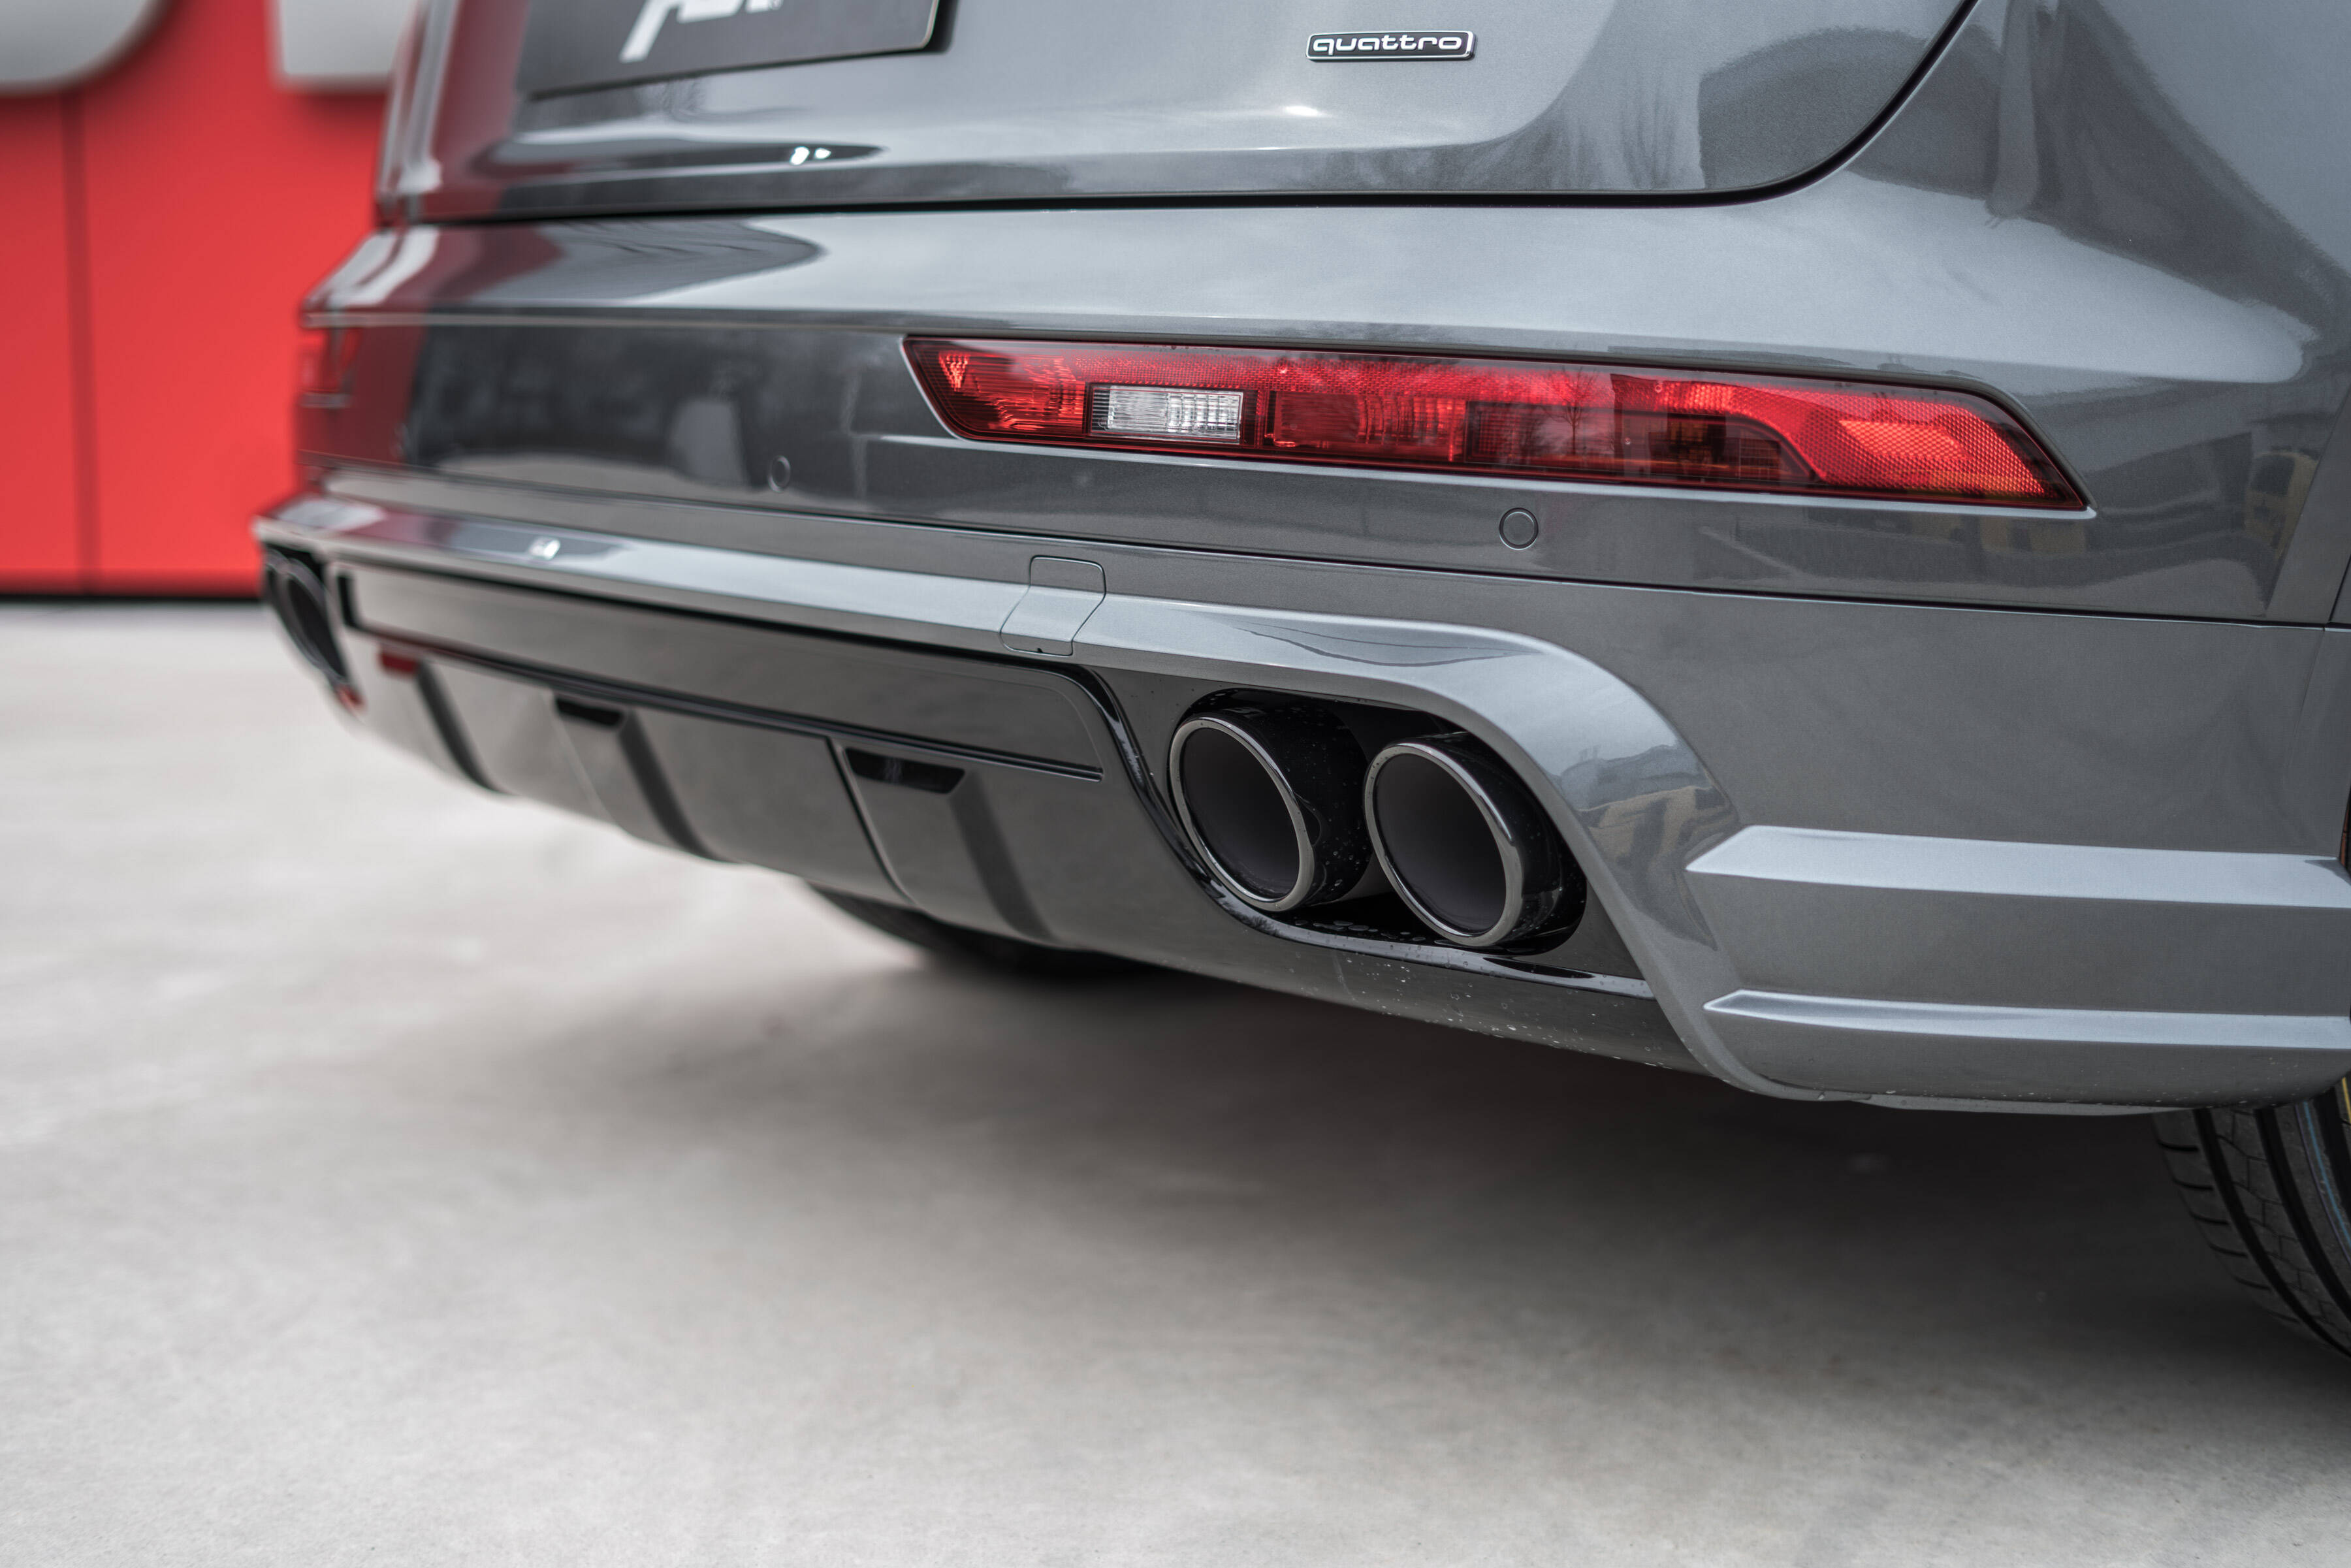 Mission ,,Rohr frei!'': ABT Heckschürzenset und mehr Power für den Audi Q5  - Audi Tuning, VW Tuning, Chiptuning von ABT Sportsline.